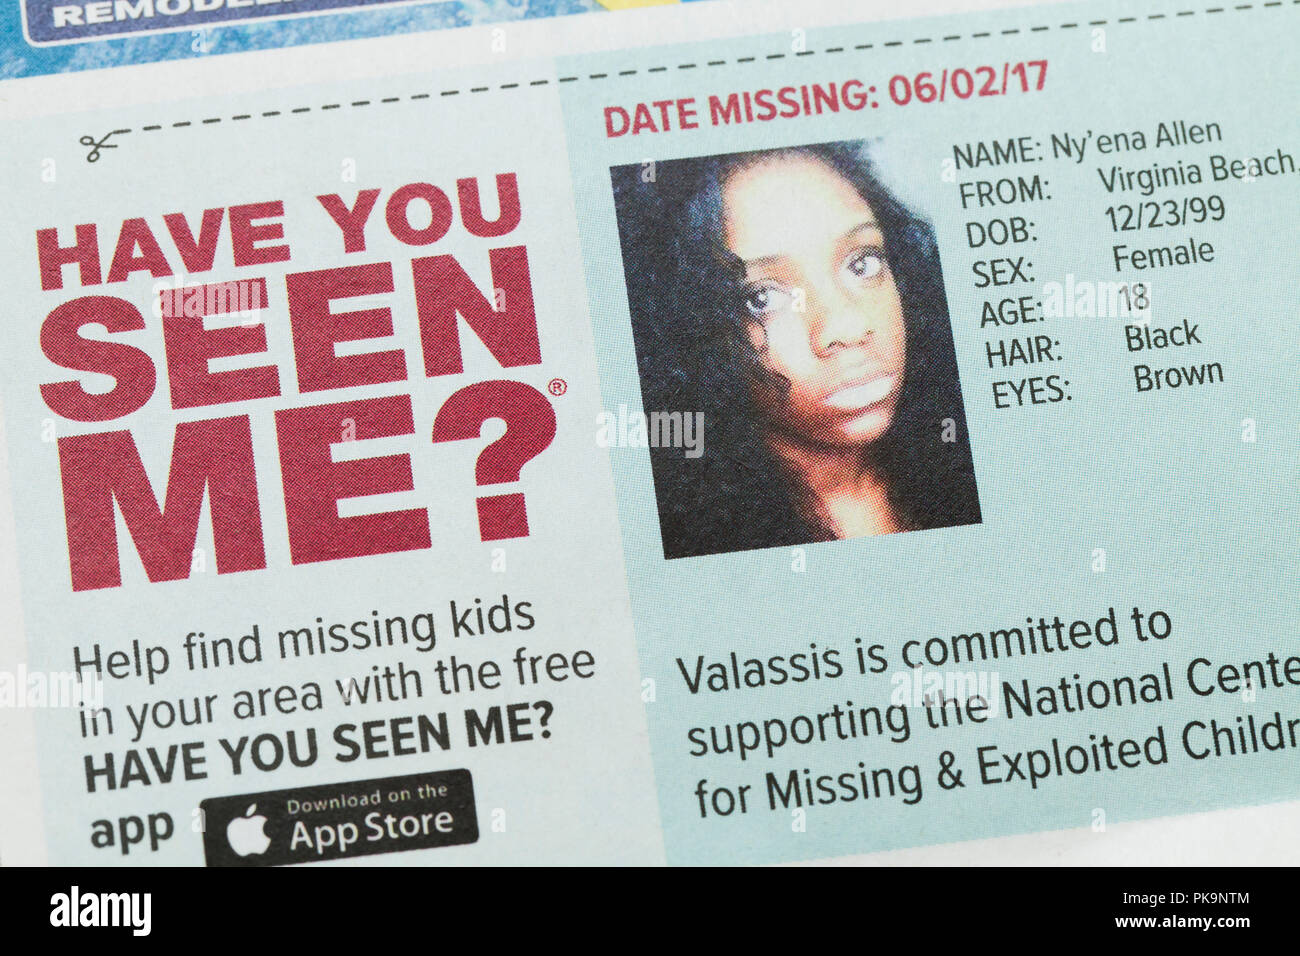 Me has visto anuncios de chica desaparecida (niños desaparecidos, niños perdidos, desaparecidos, los desaparecidos) - EE.UU. Foto de stock